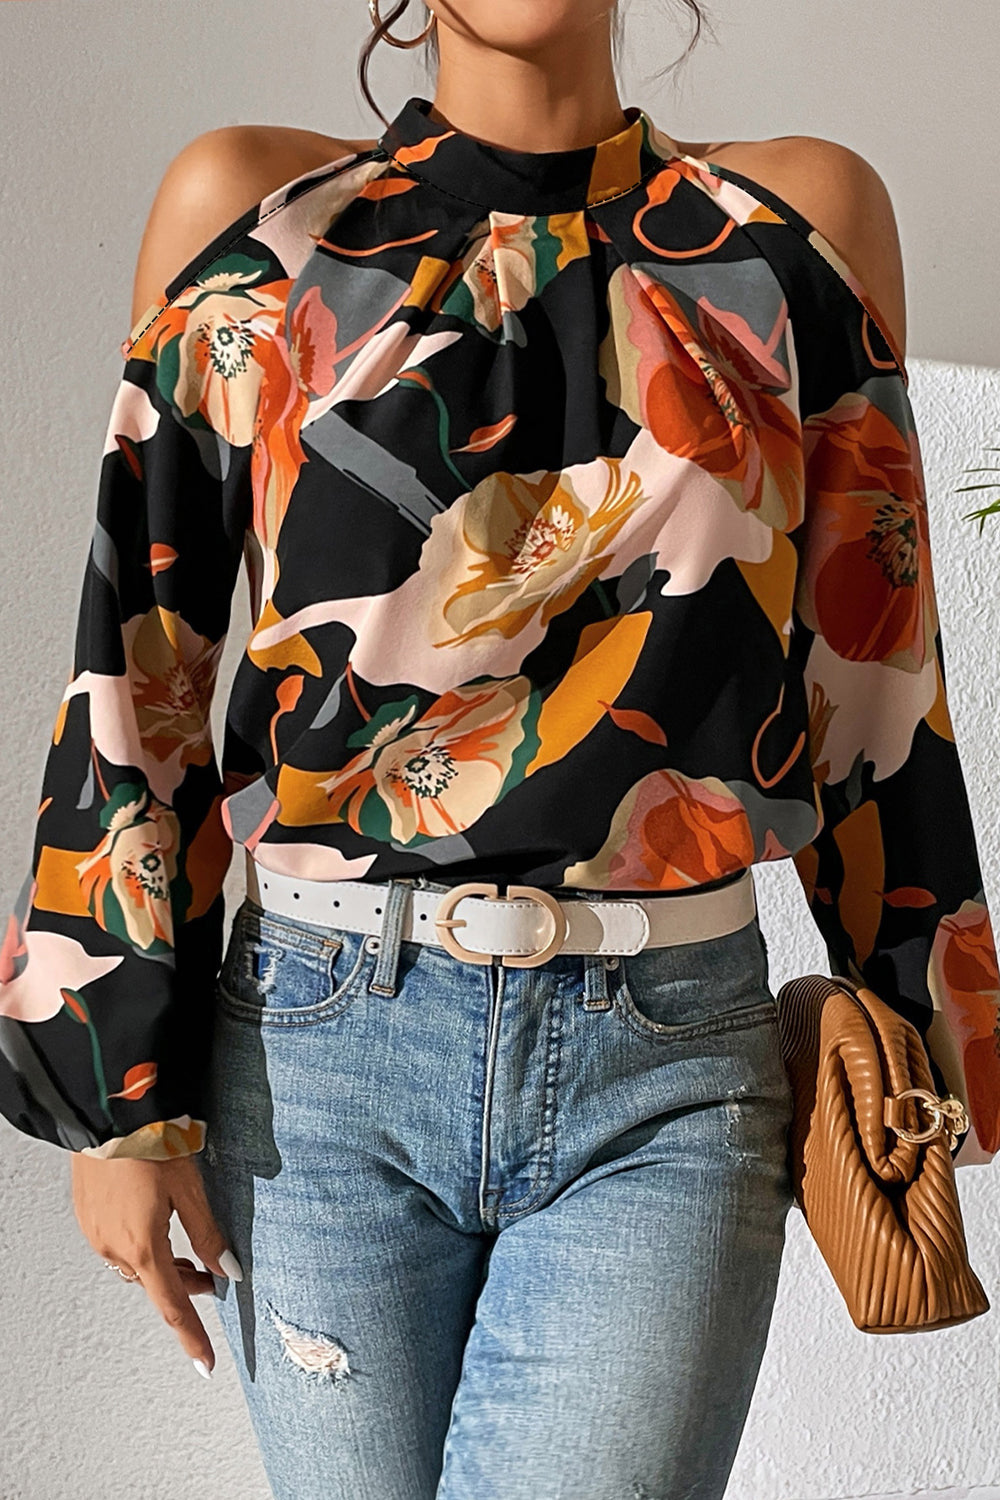 Črna bluza s cvetličnim vzorcem in hladnimi rokavi na ramenih